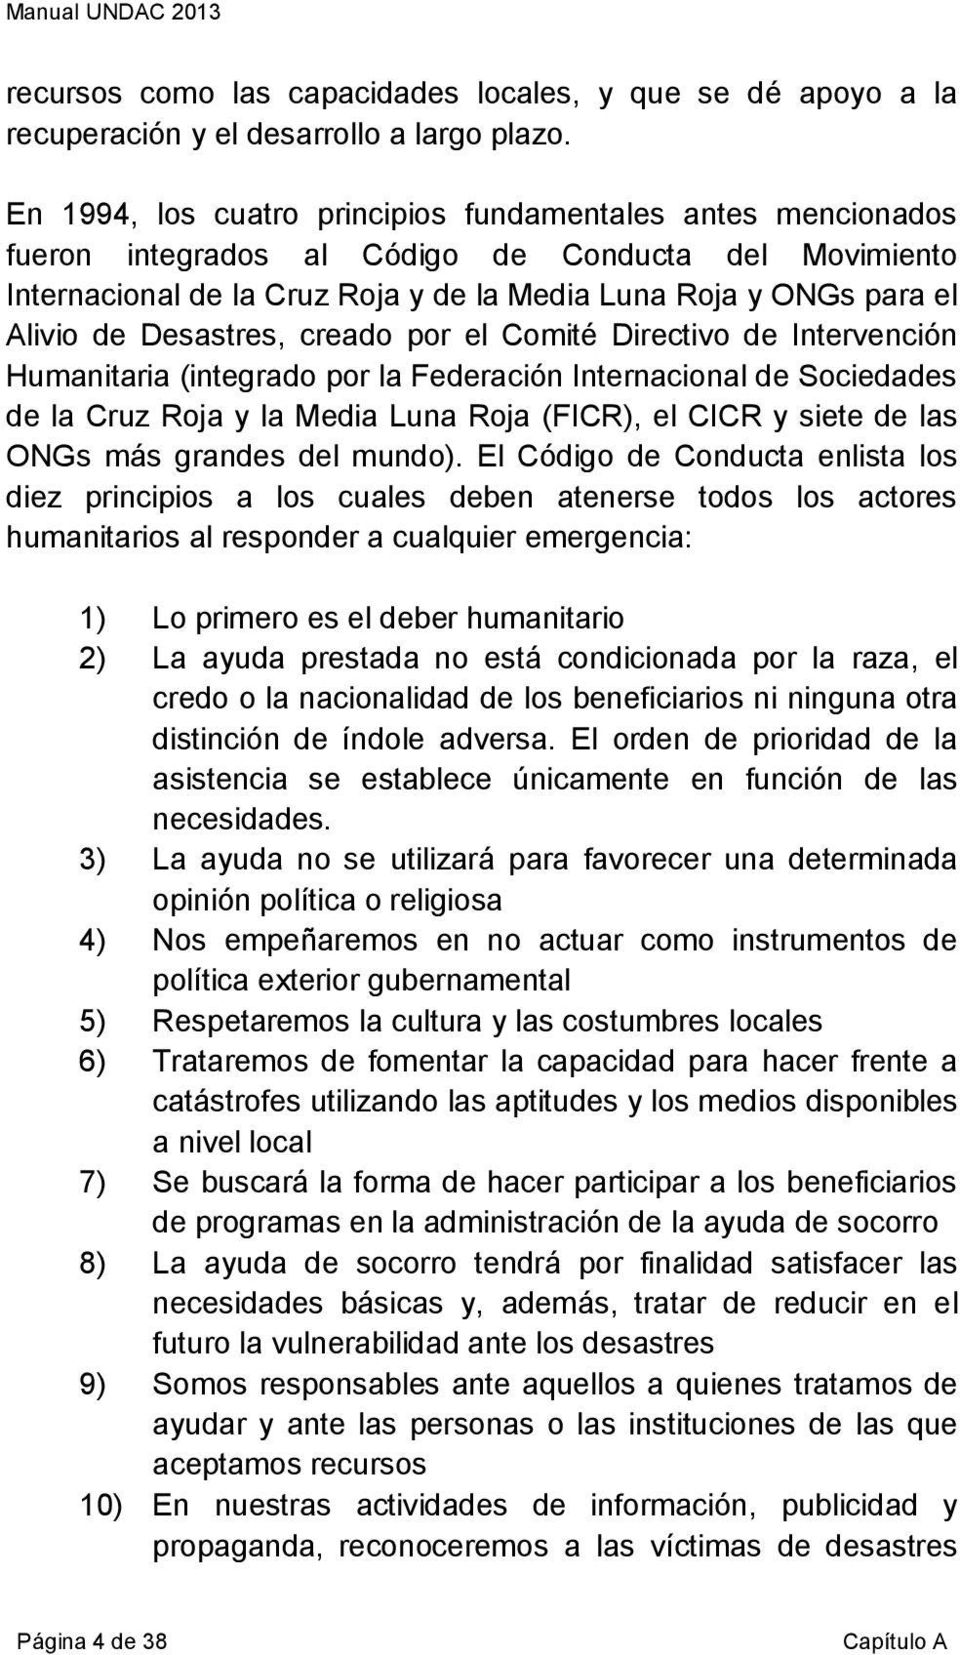 Desastres, creado por el Comité Directivo de Intervención Humanitaria (integrado por la Federación Internacional de Sociedades de la Cruz Roja y la Media Luna Roja (FICR), el CICR y siete de las ONGs